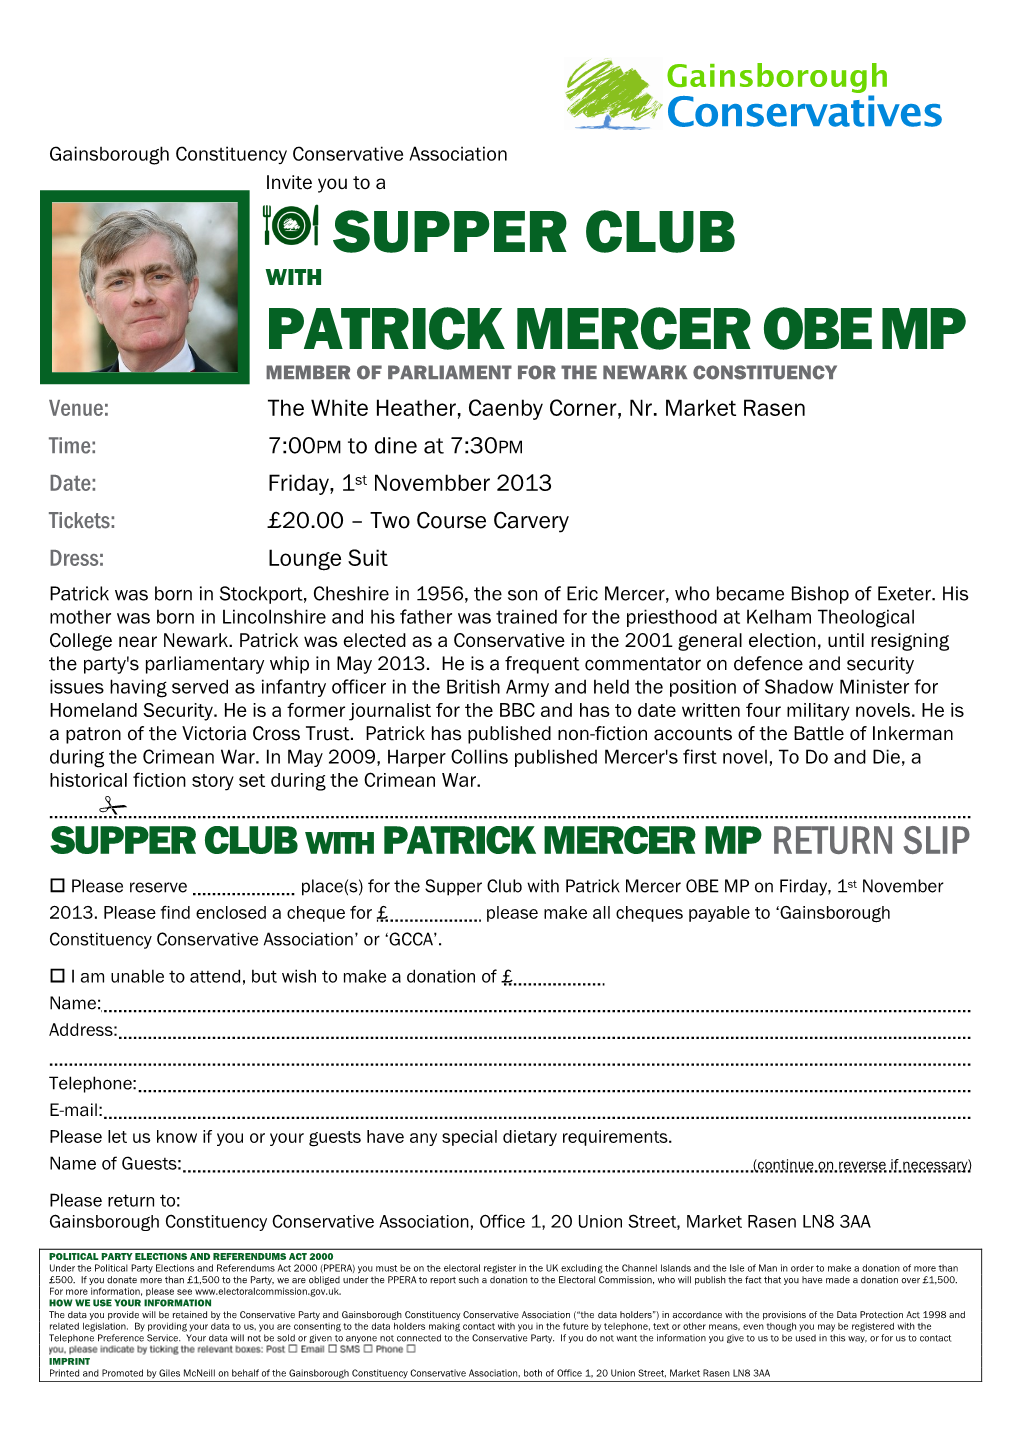 Supper Club with Patrick Mercer OBE MP Invitation